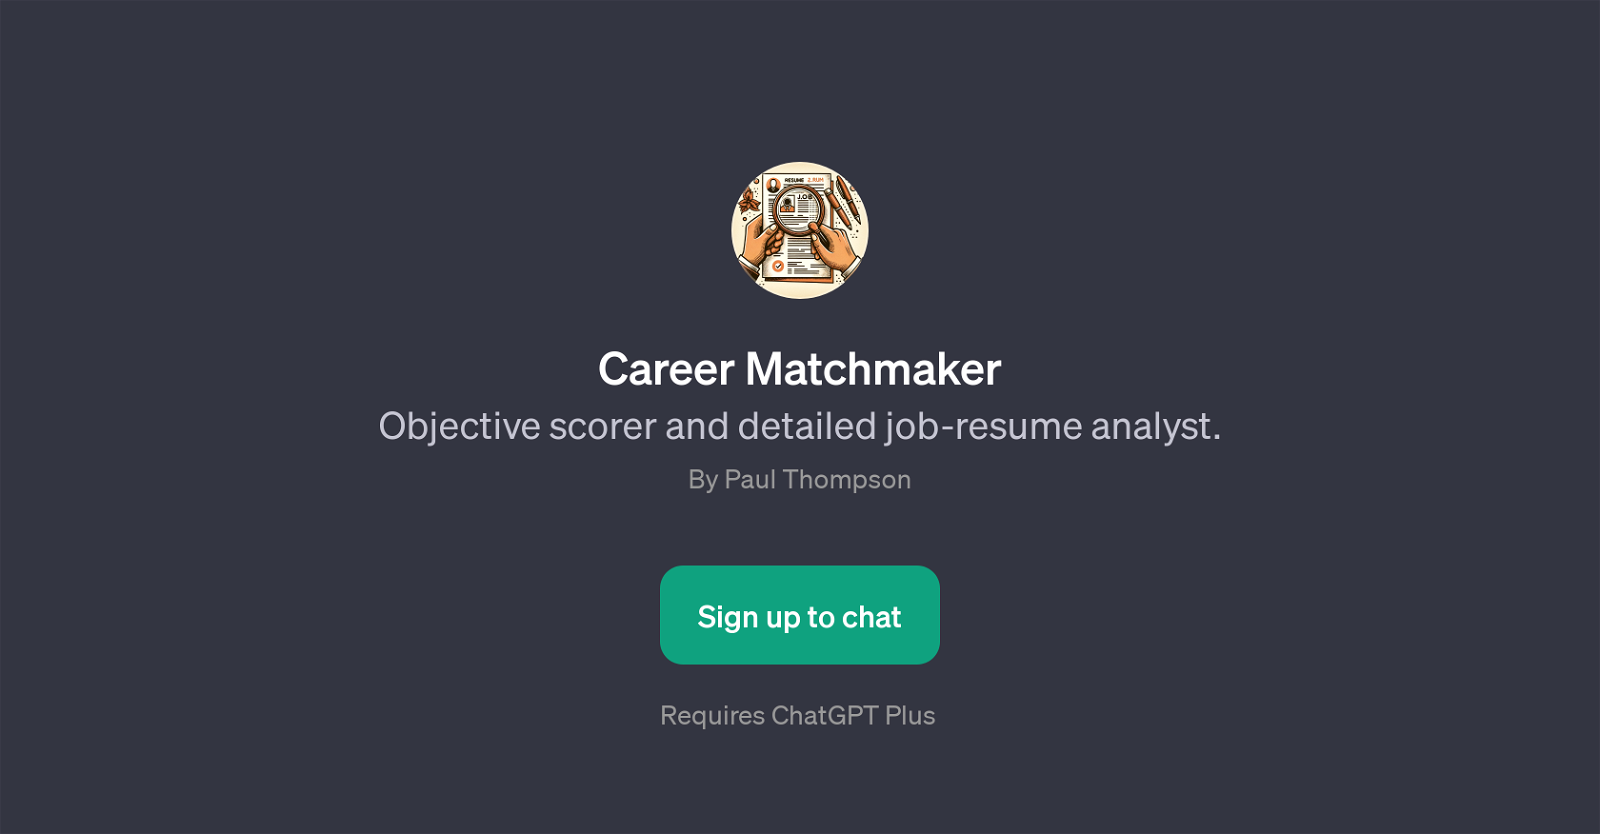 Career Matchmaker website